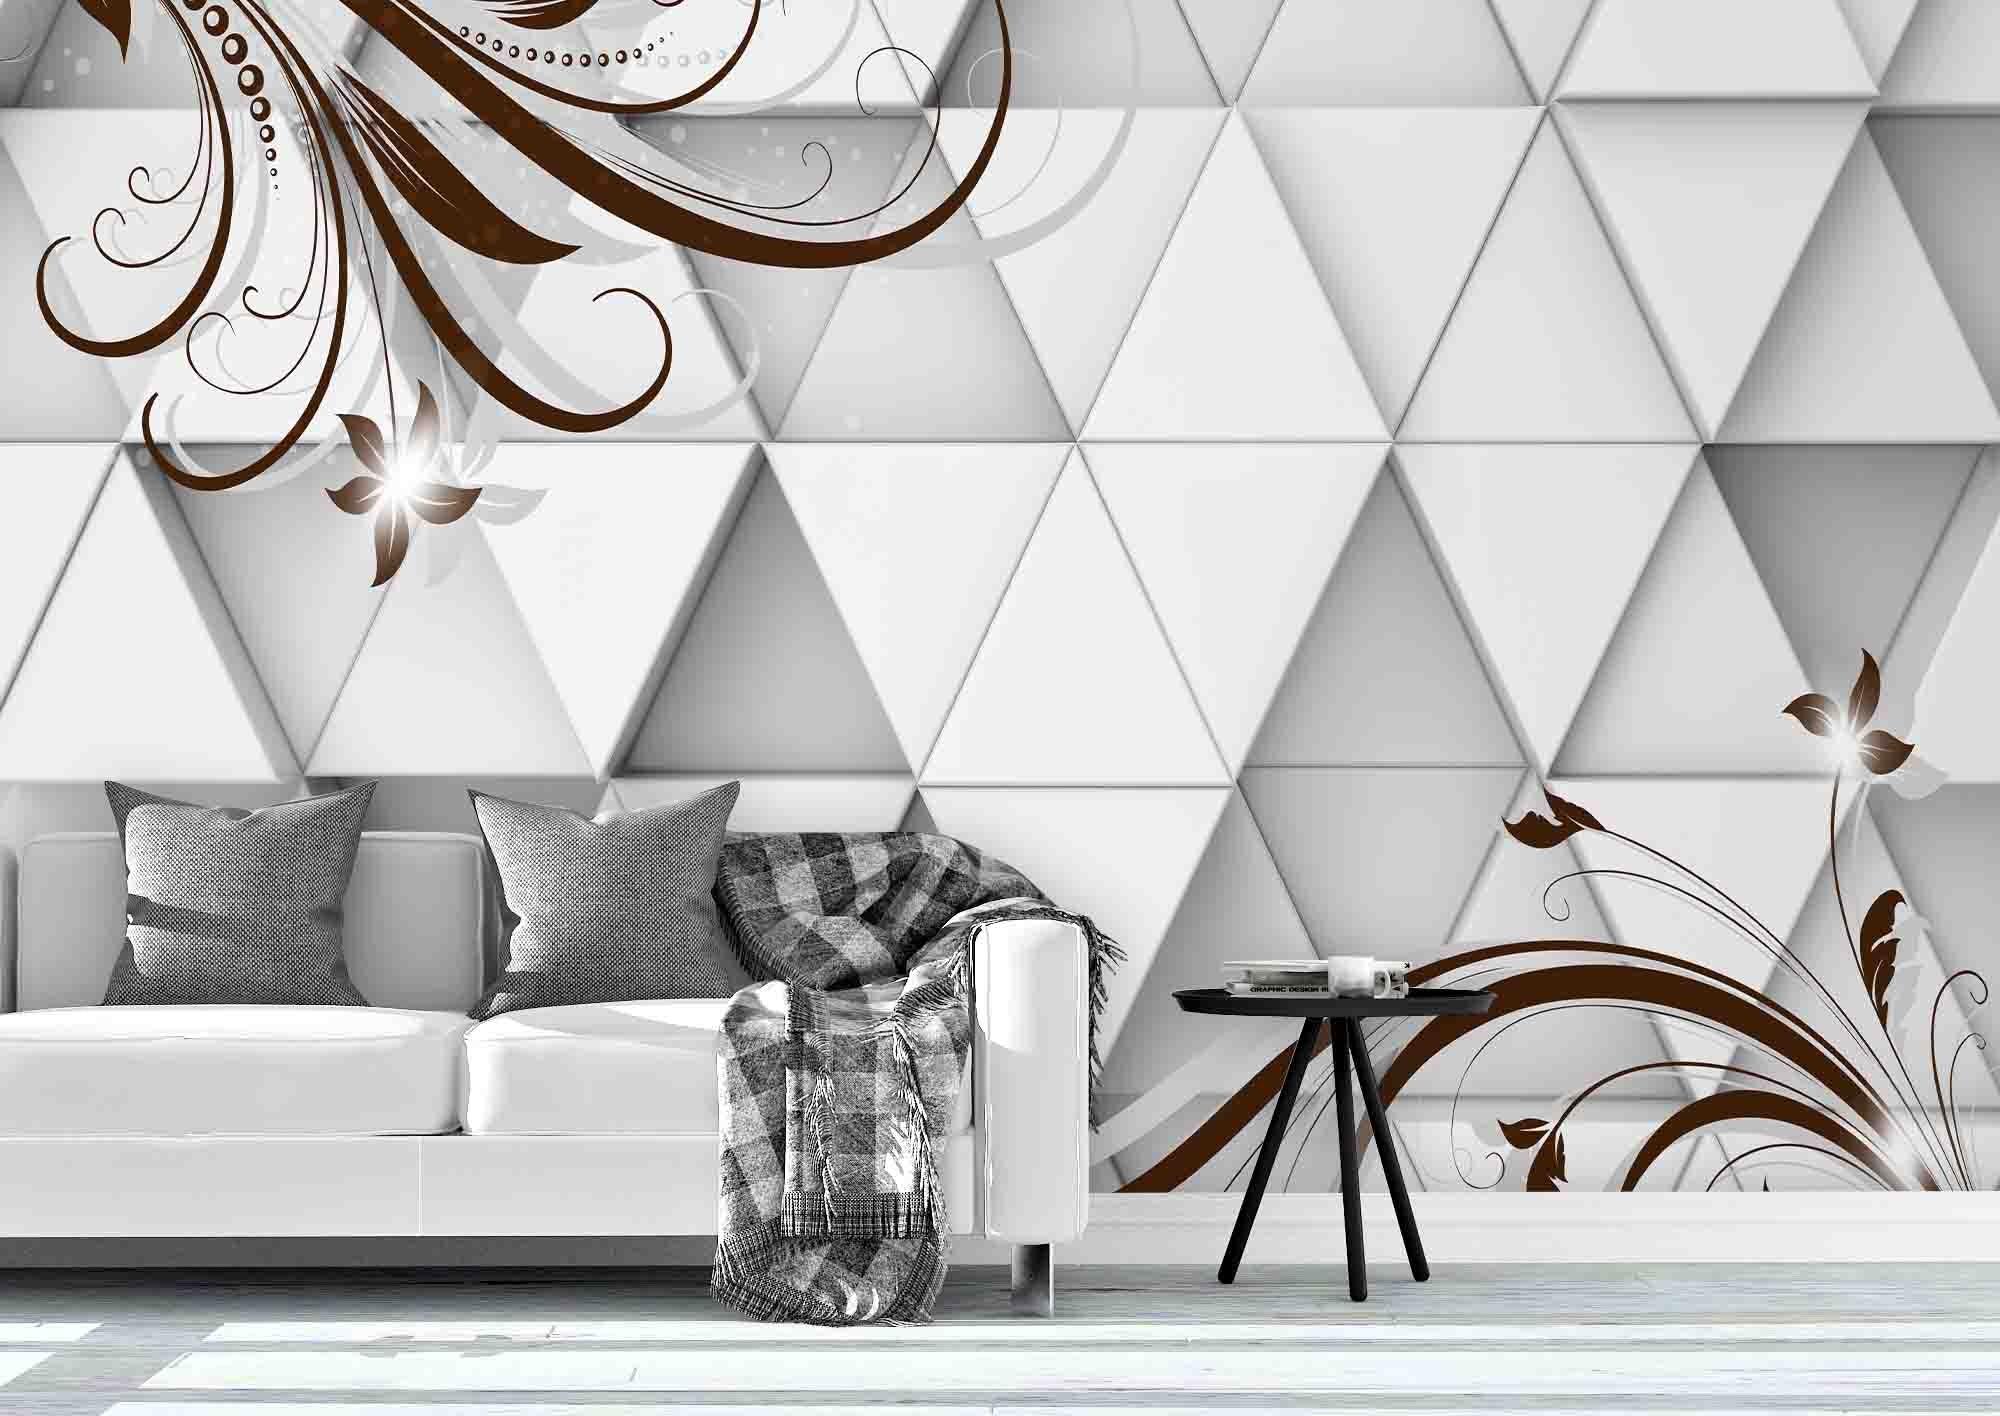 3D Emboss Floral Triangle Wall Mural Wallpaper 89- Jess Art Decoration